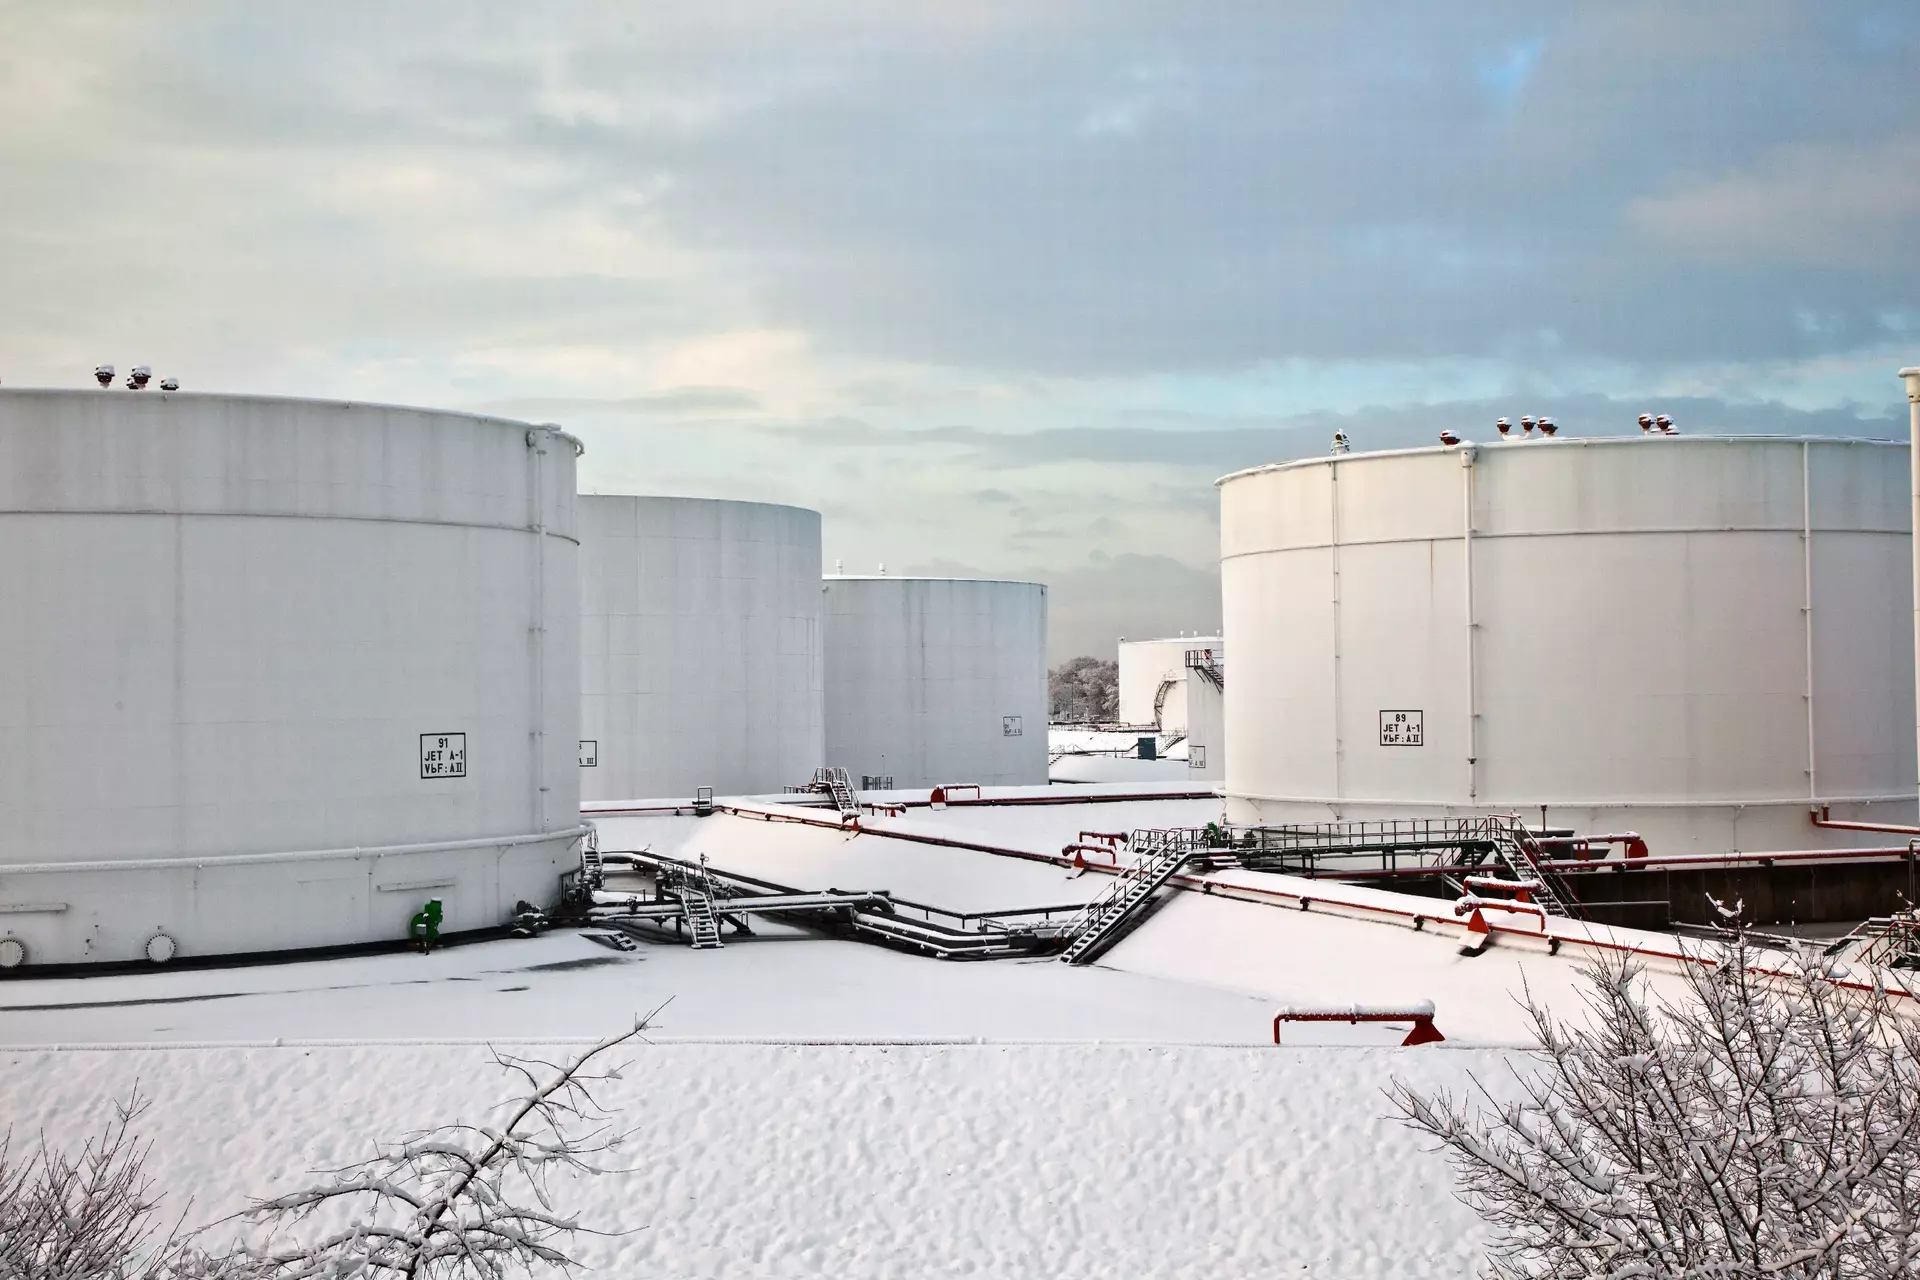 Weißöltanks im Tanklager mit Schnee im Winter